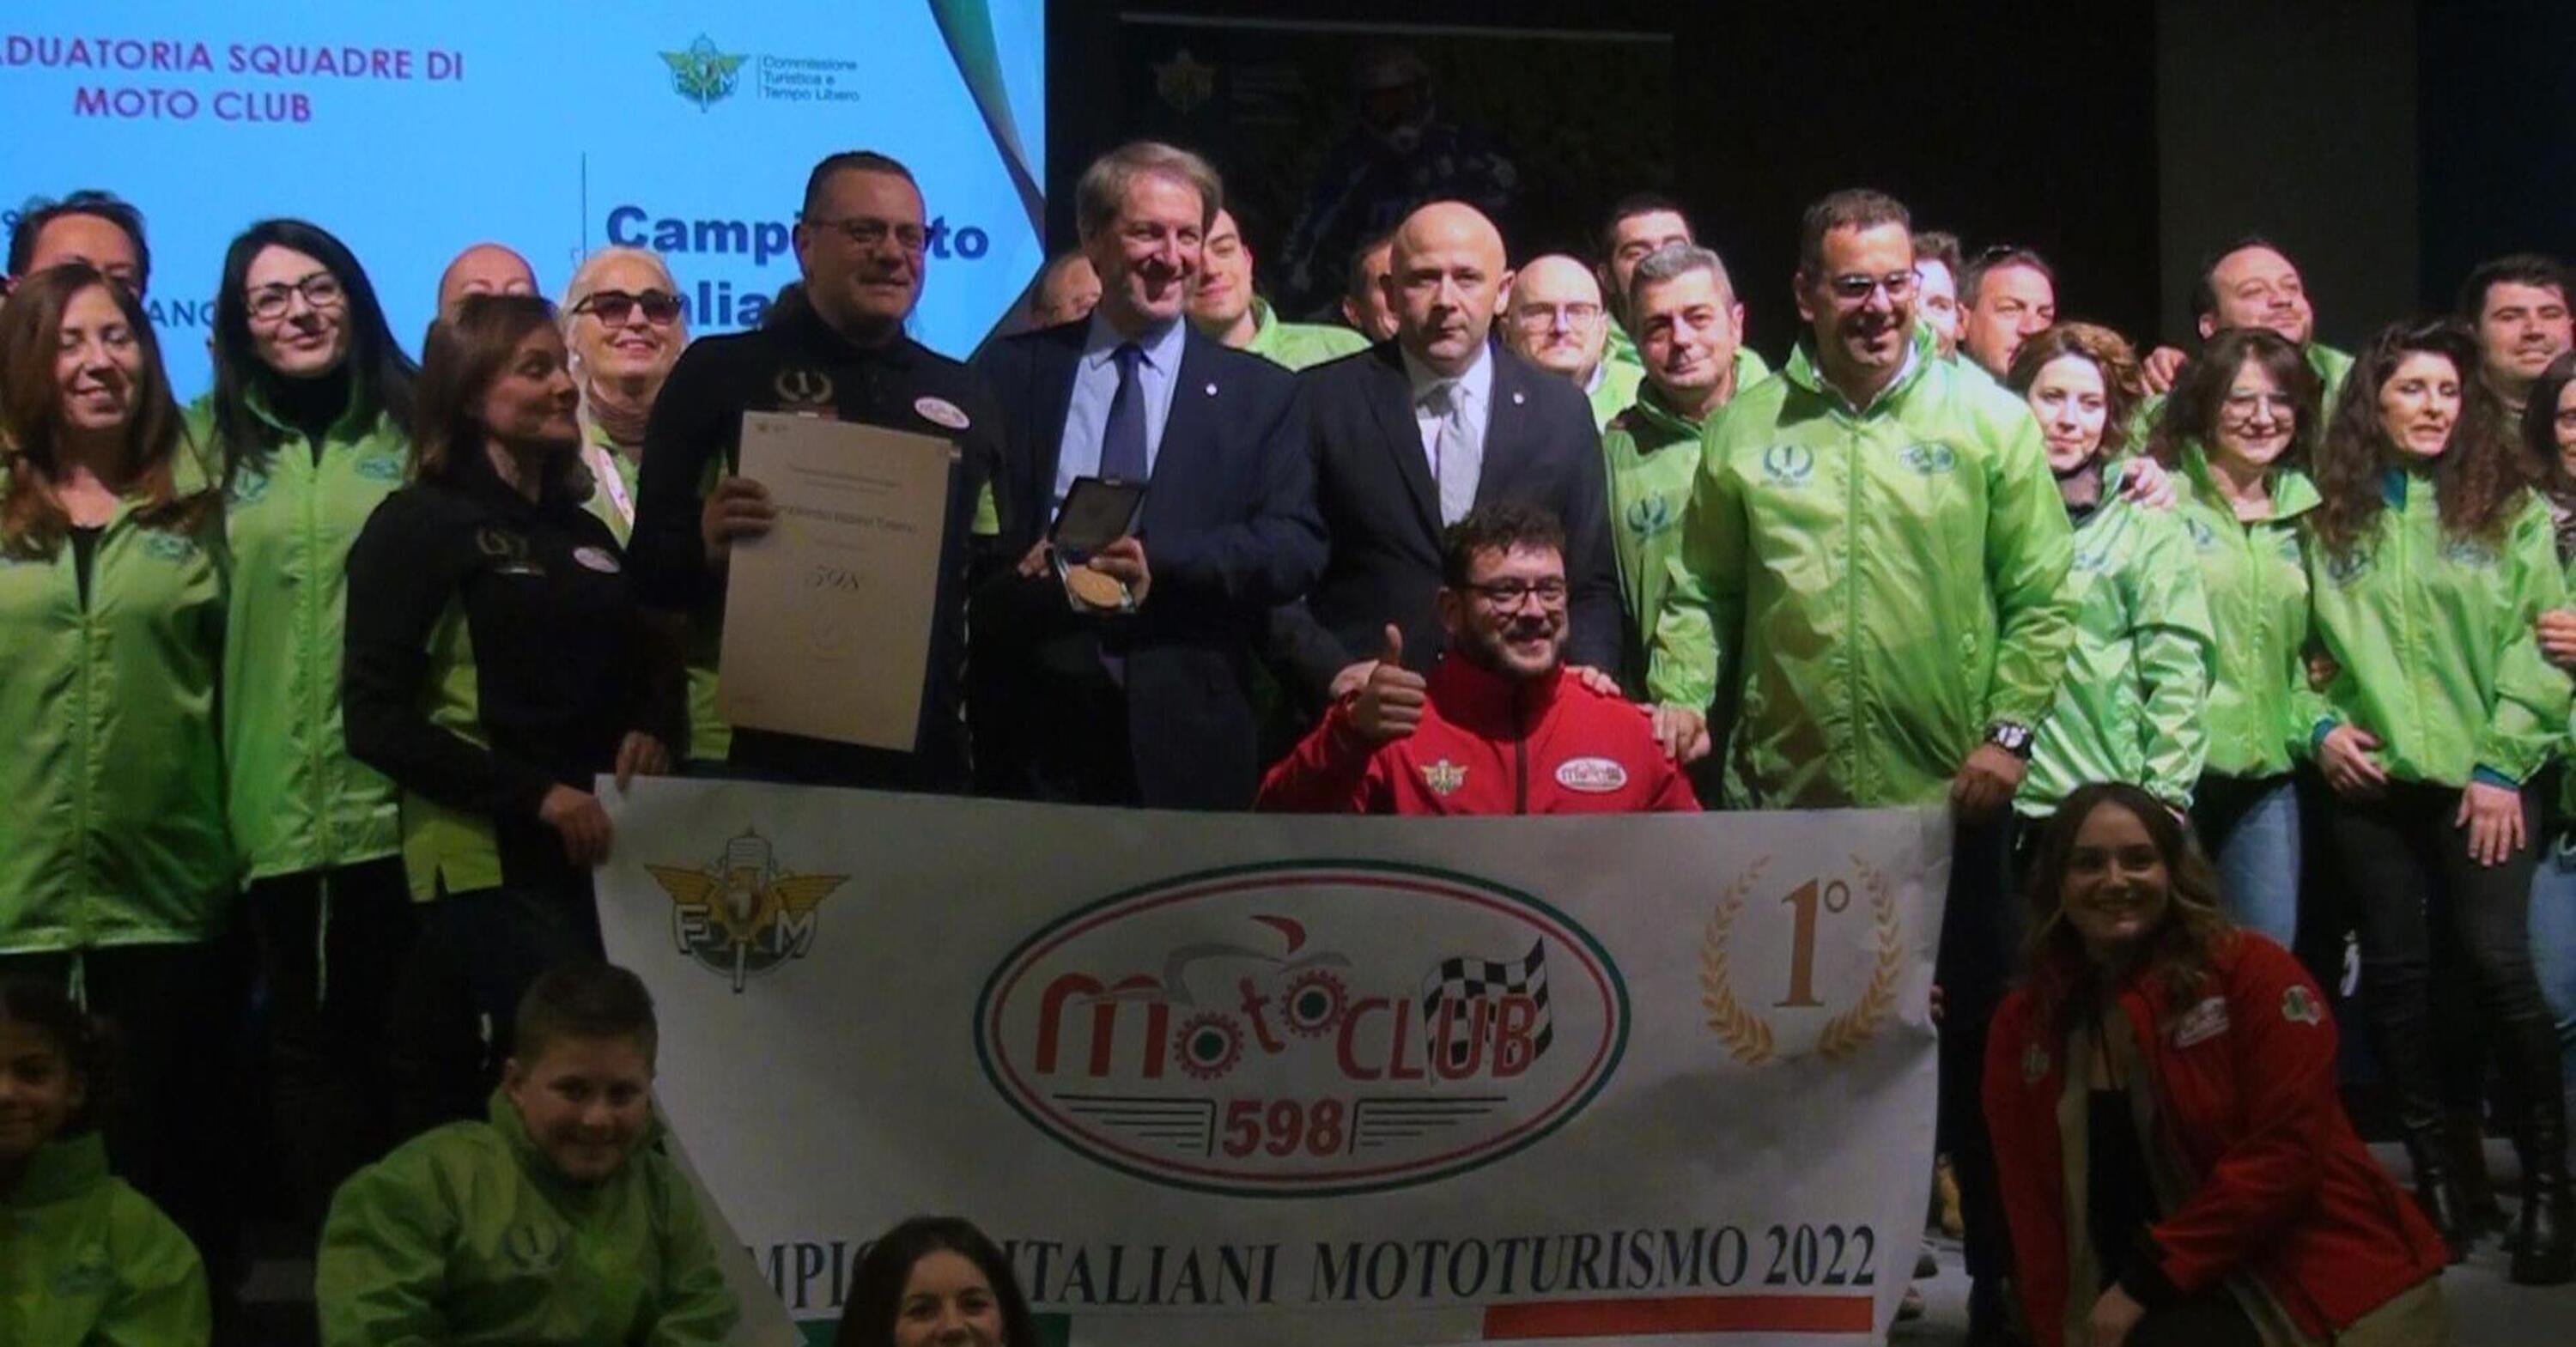 Premiati a Verona i Campioni del Mototurismo 2022